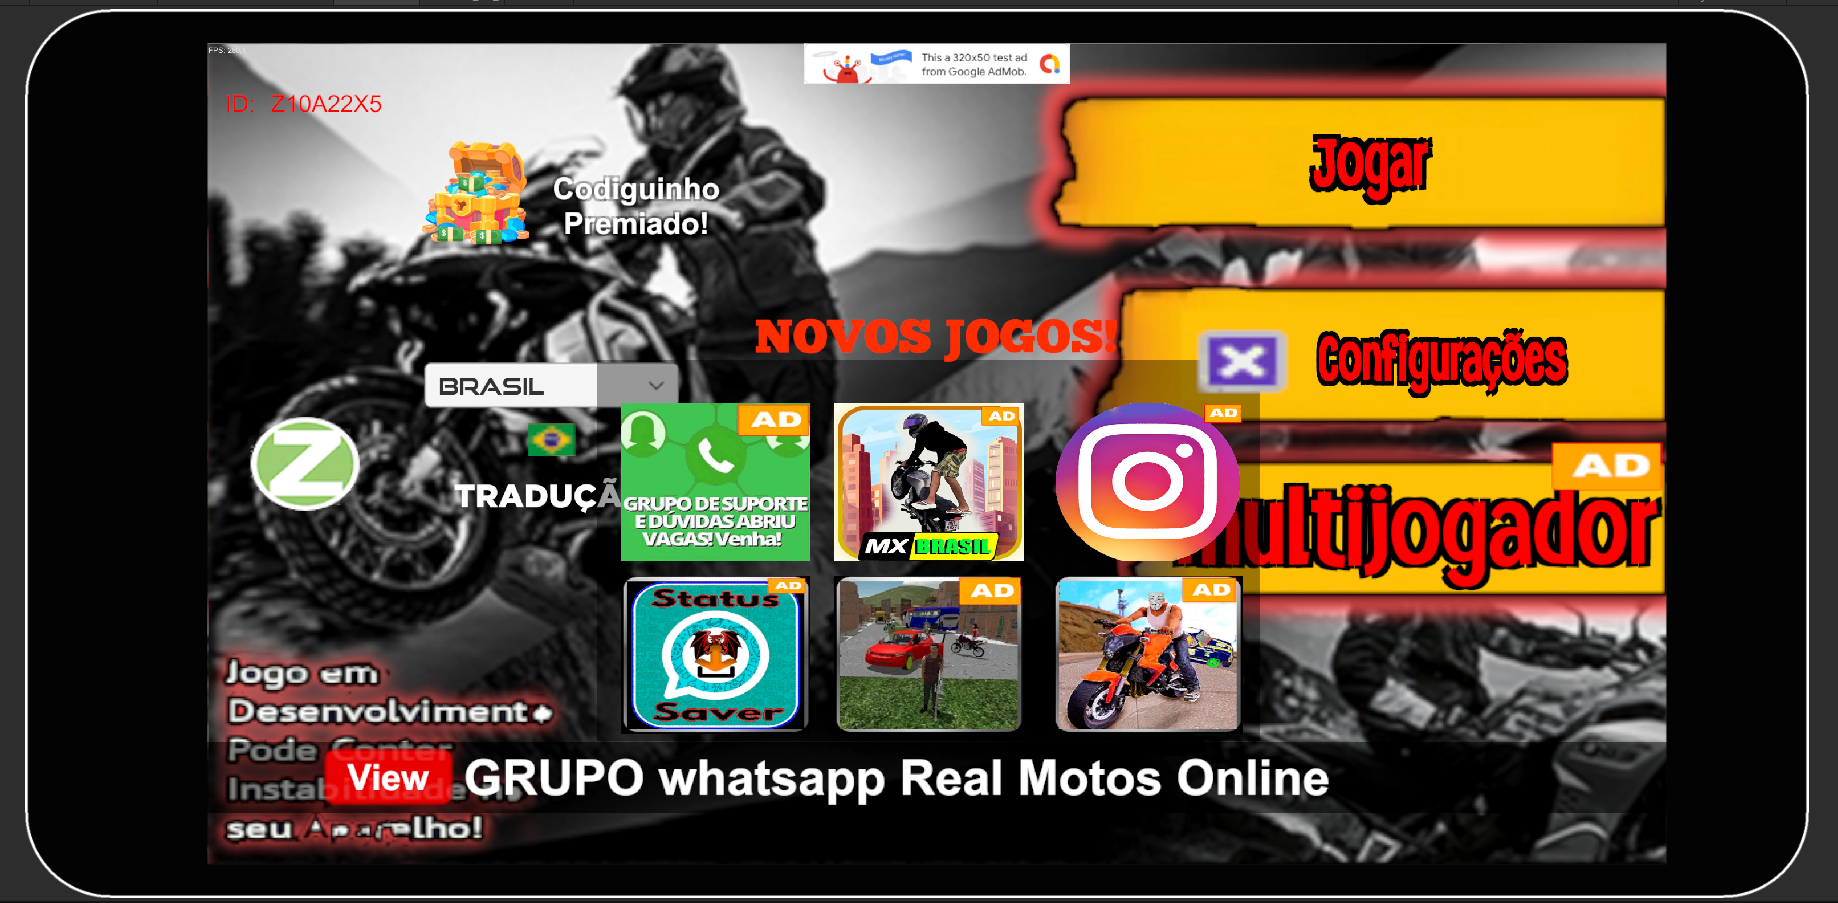 Moto Vlog Brasil 2 para Android - Download